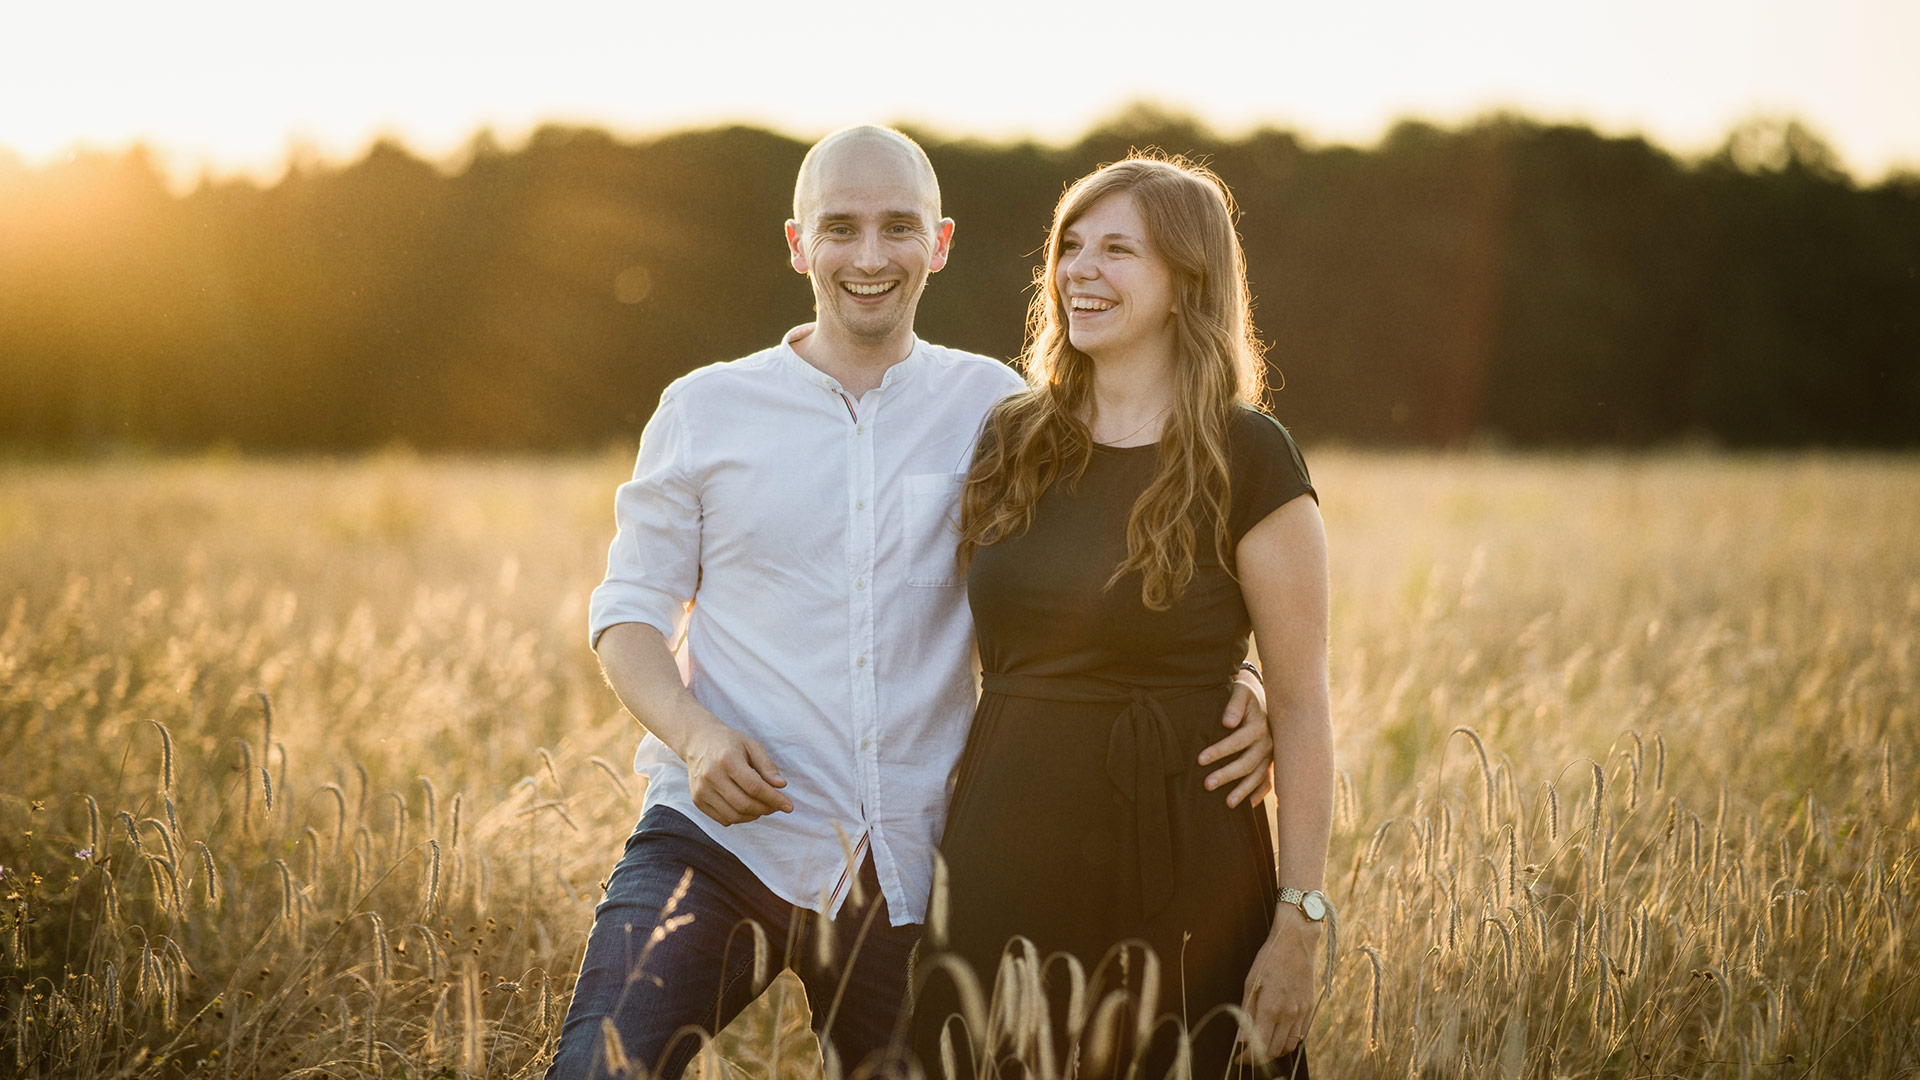 Verlobung Shooting Germersheim, Paar spaziert auf einem Feld beim Sonnenuntergang und freut sich auf die Hochzeit.